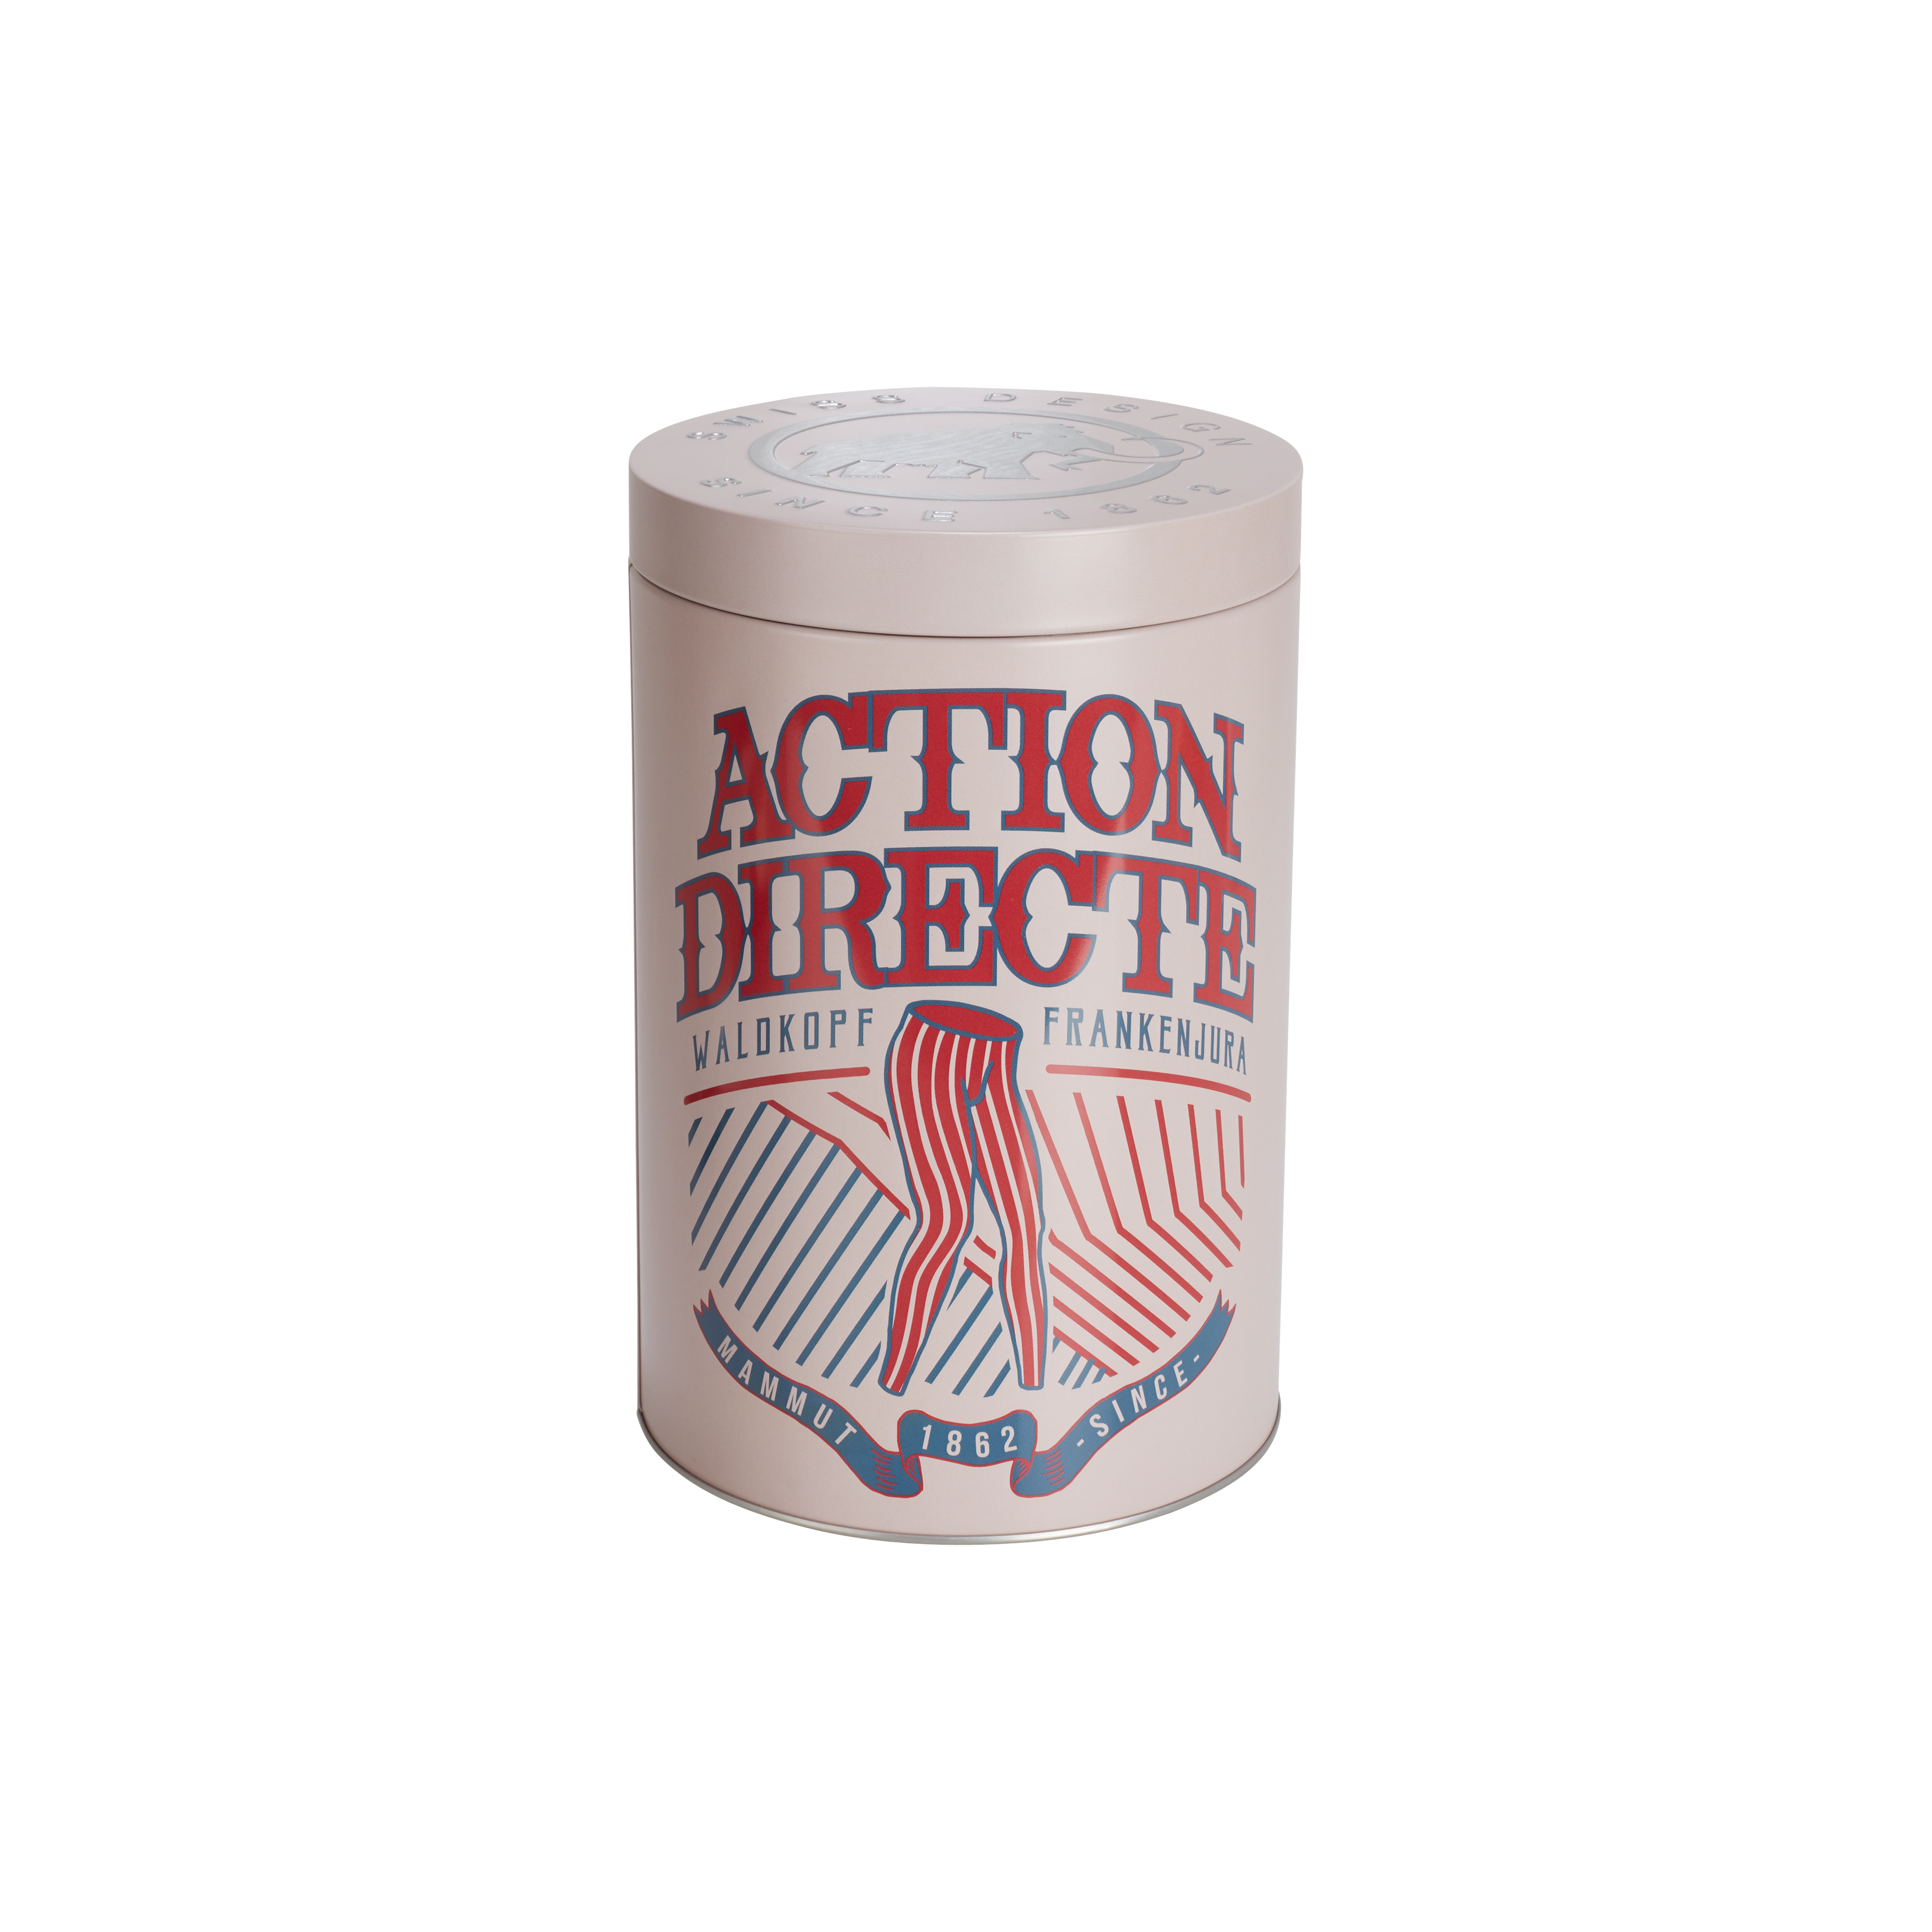 Pure Chalk Collectors Box - action directe, one size thumbnail